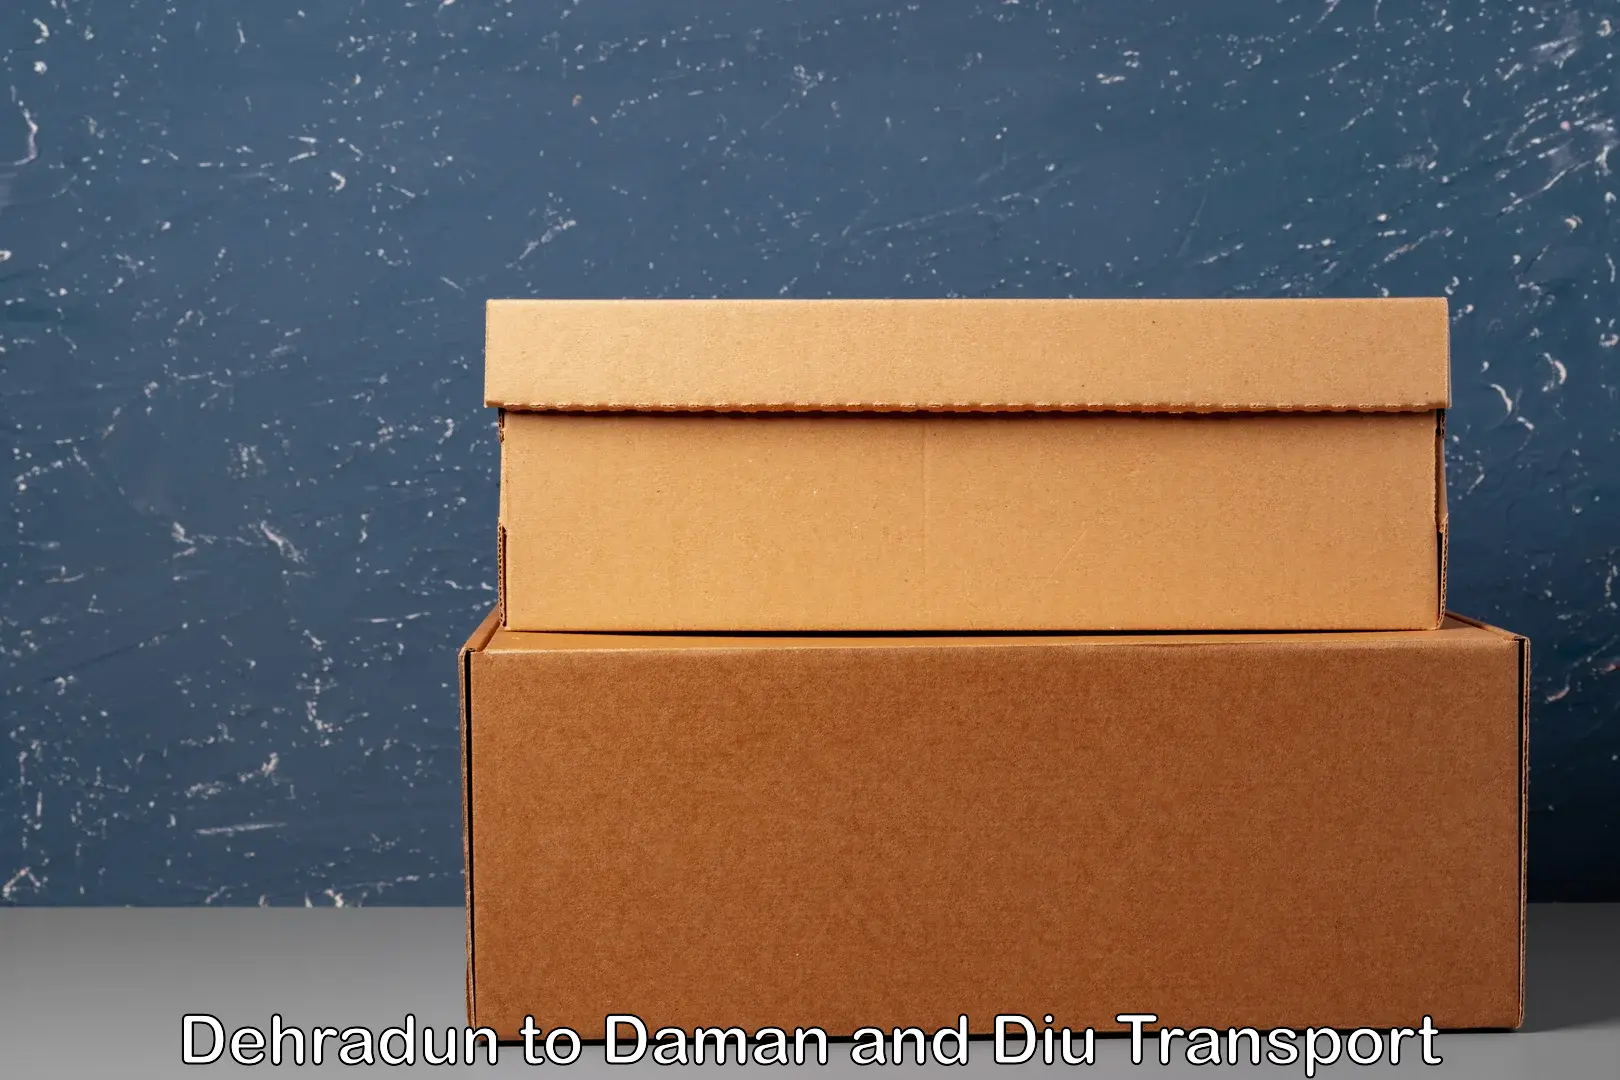 Daily parcel service transport Dehradun to Daman and Diu